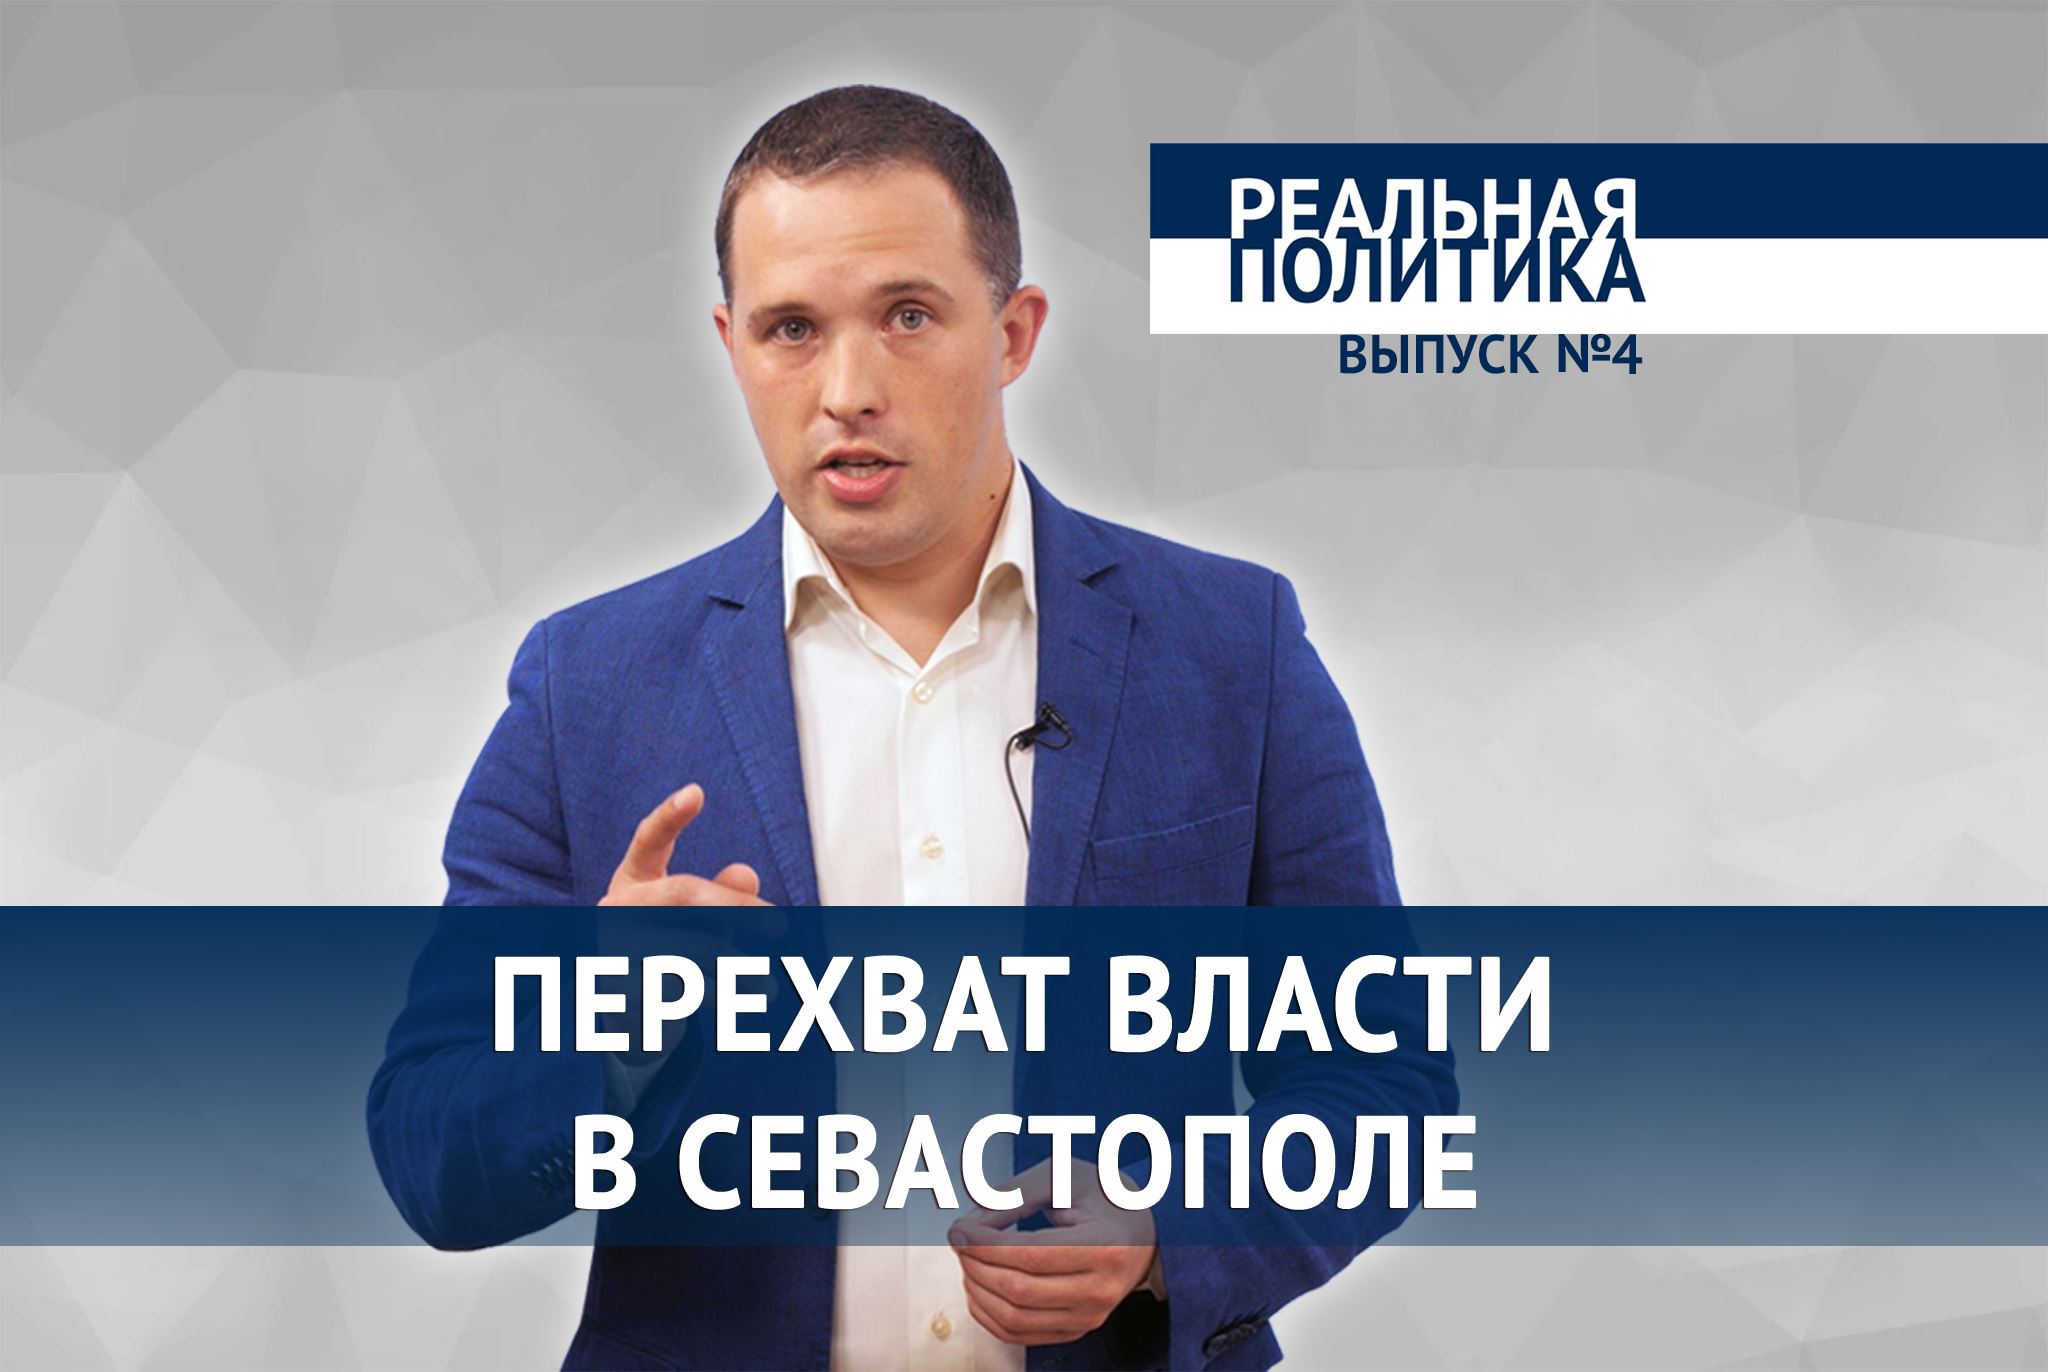 «Реальная политика». Перехват власти в Севастополе